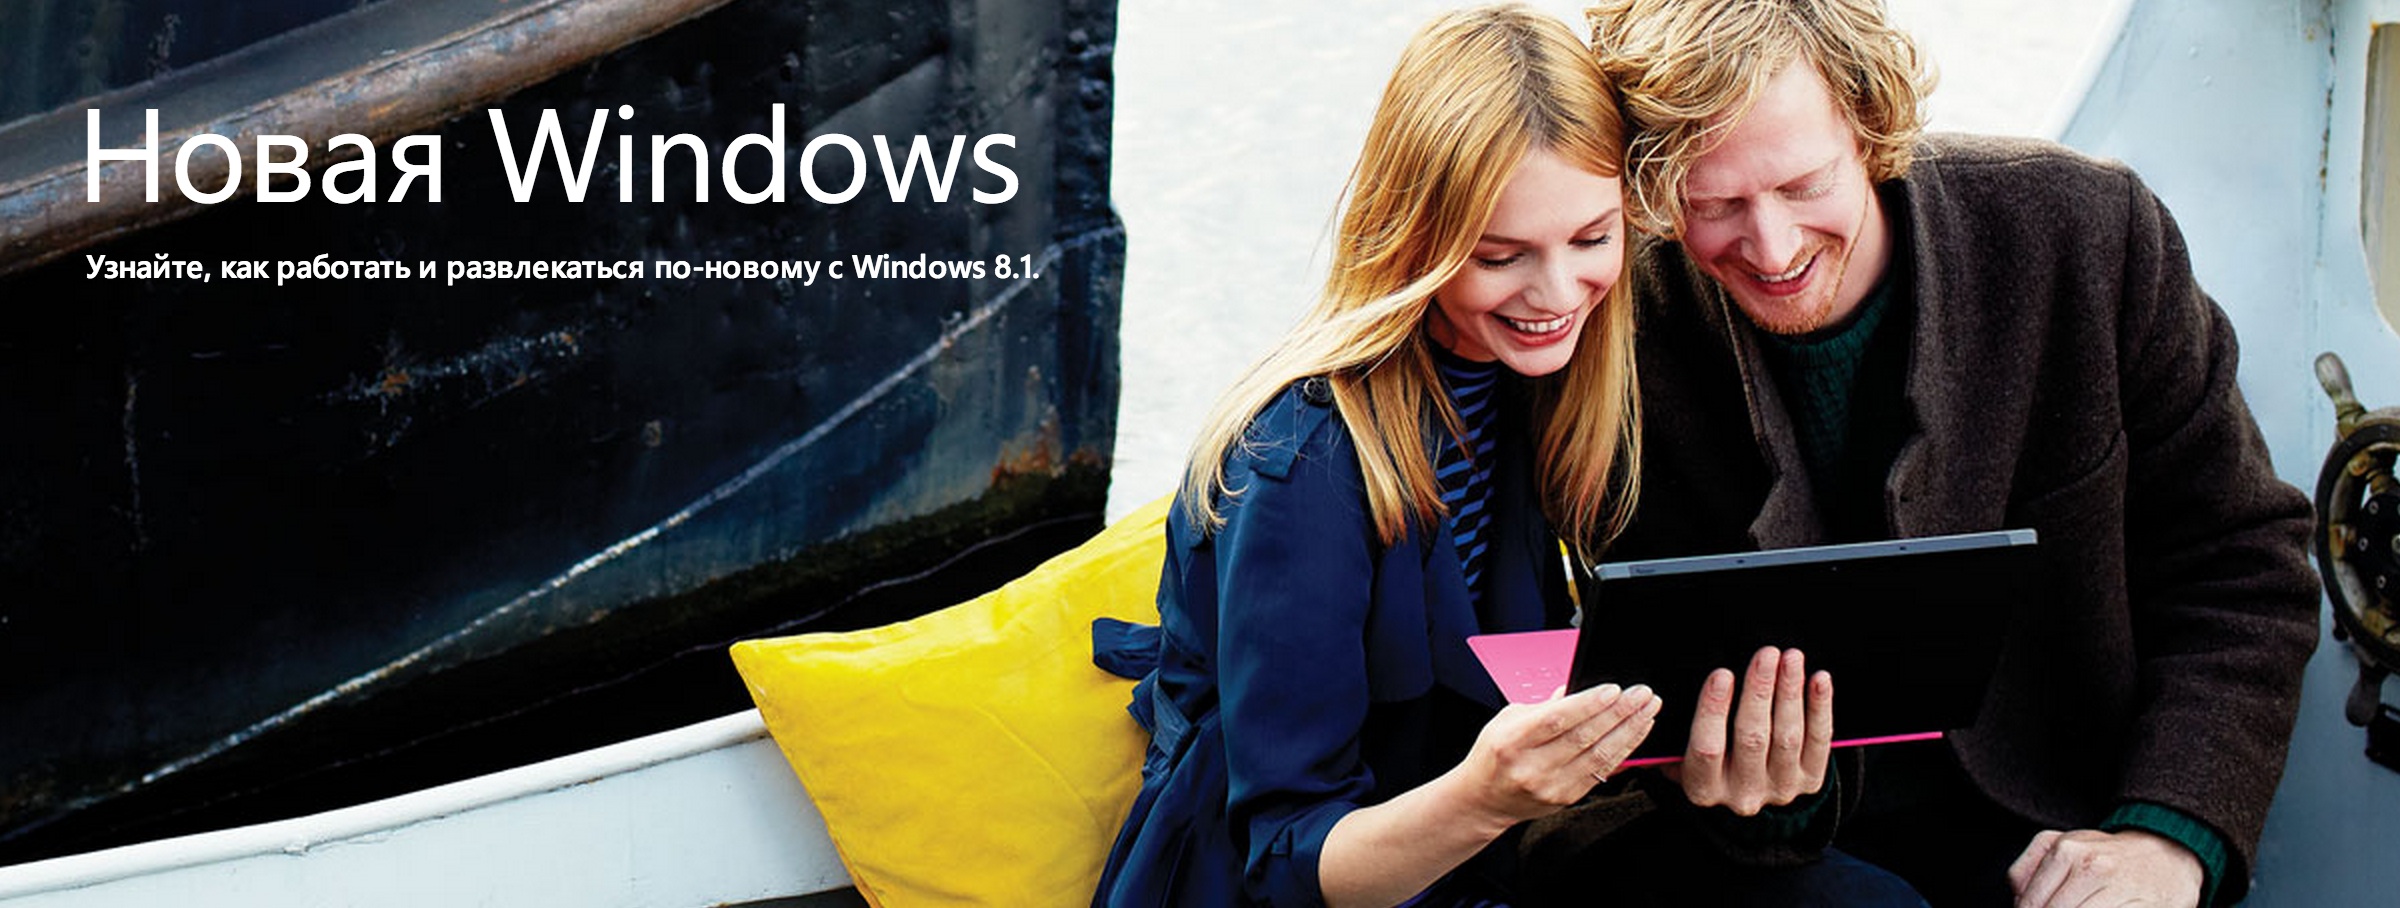 Windows 8.1/Придумай правдивую подпись к фото!